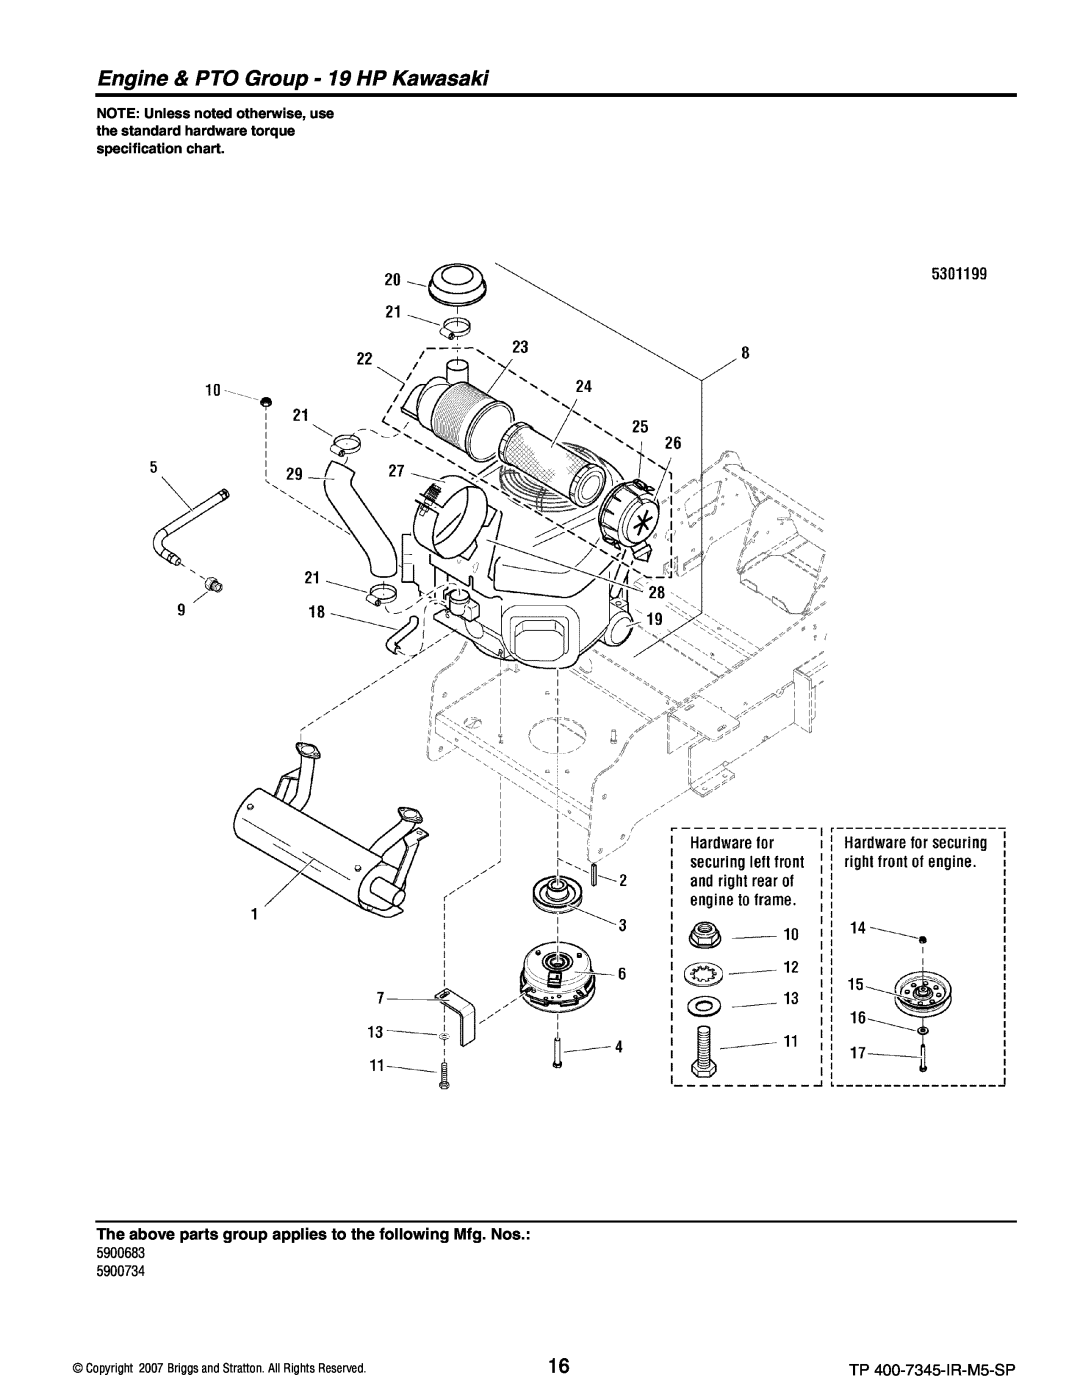 Briggs & Stratton 5900709, 5900734 manual Engine & PTO Group - 19 HP Kawasaki, 5900683, TP 400-7345-IR-M5-SP 